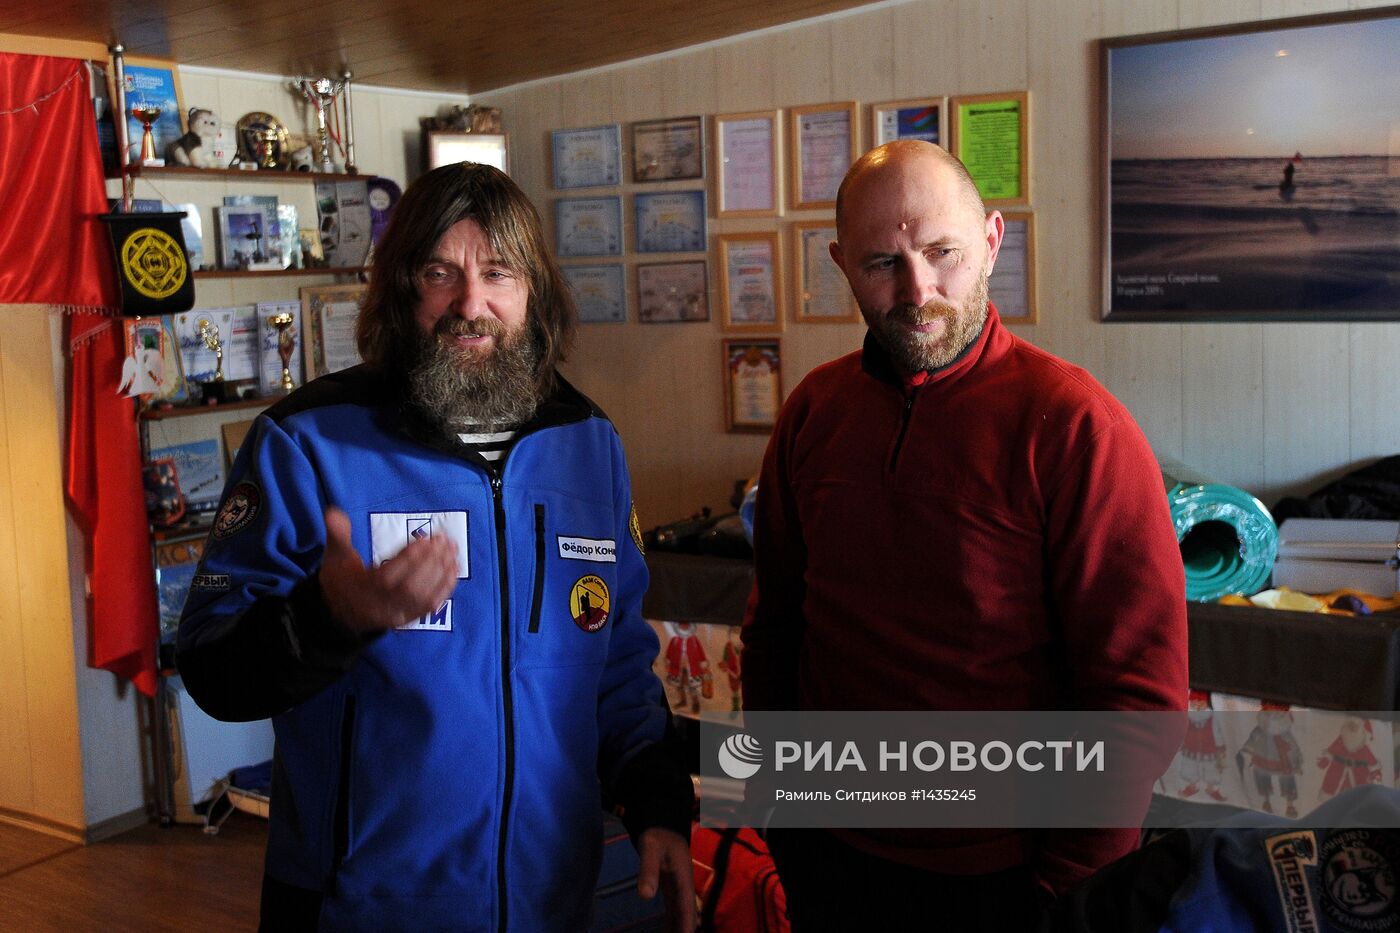 Федор Конюхов отправился в экспедицию на собаках